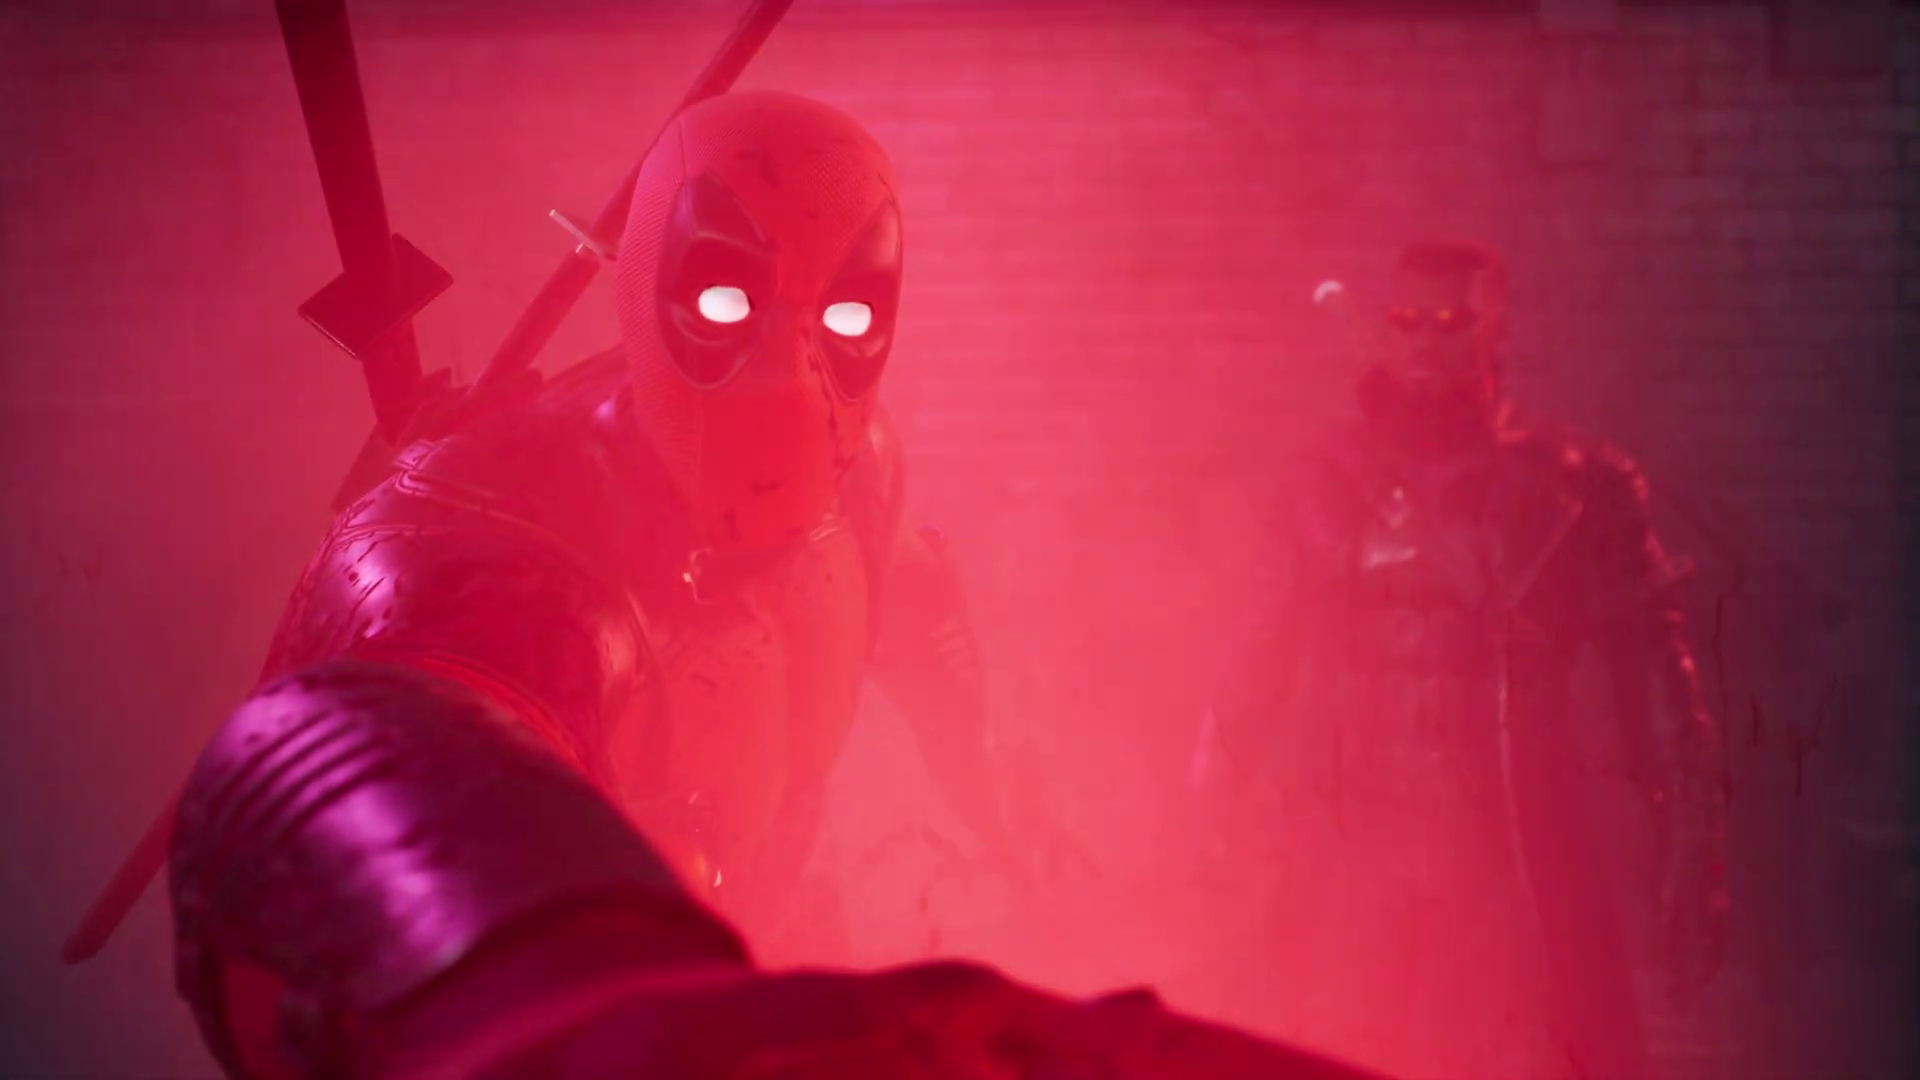 《漫威暗夜之子》死侍DLC本月26日发售 新预告公布 二次世界 第7张